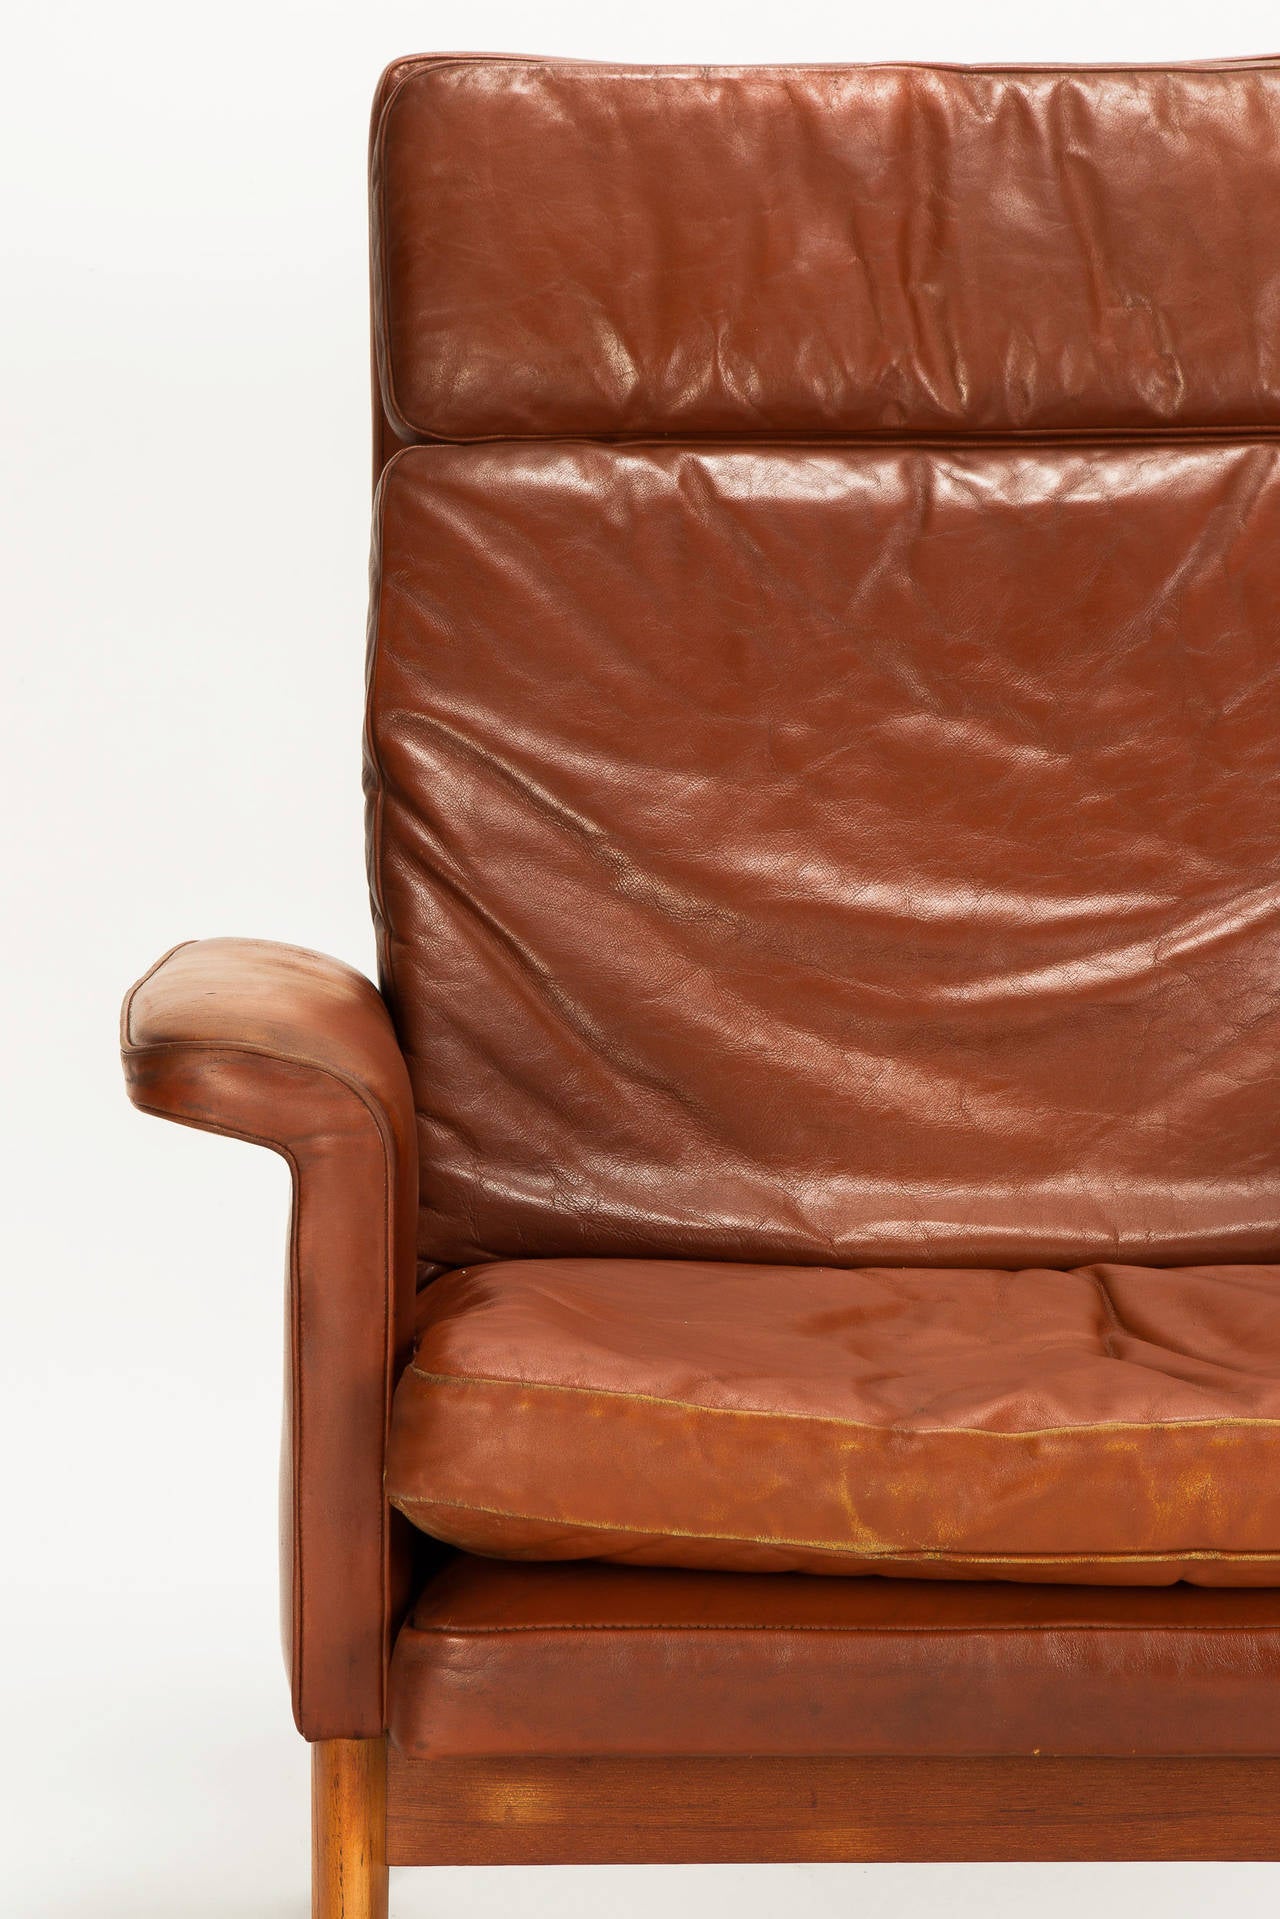 Danish Jupiter High Back Chair Leather Teak by Finn Juhl, 1960s